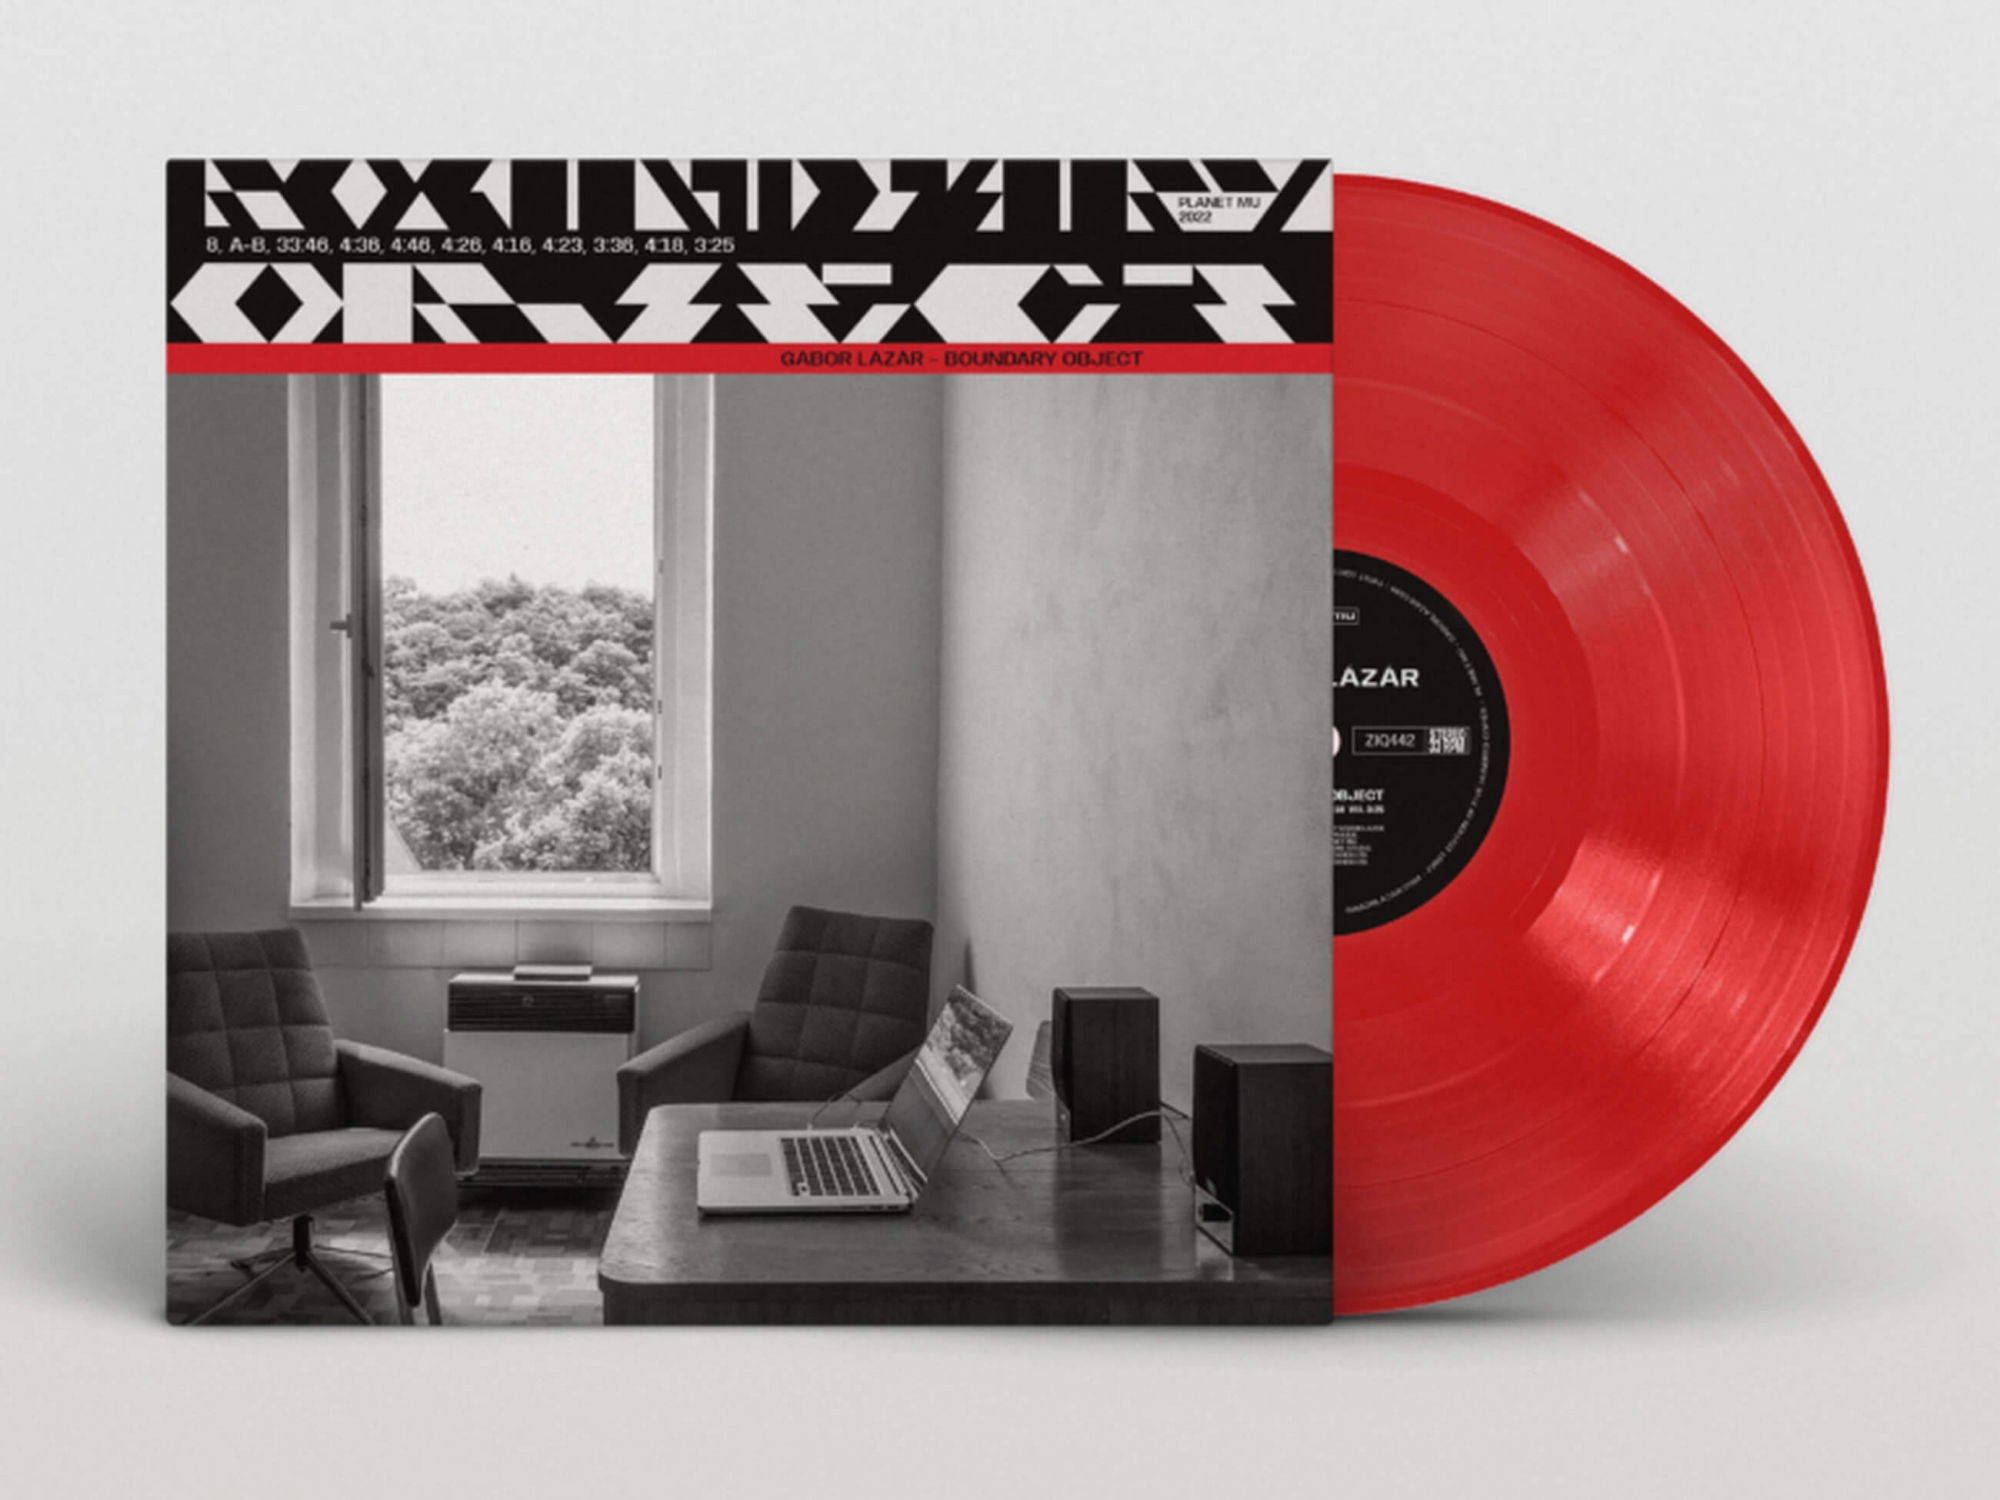 Gábor Lázár Boundary Object Red vinyl LP